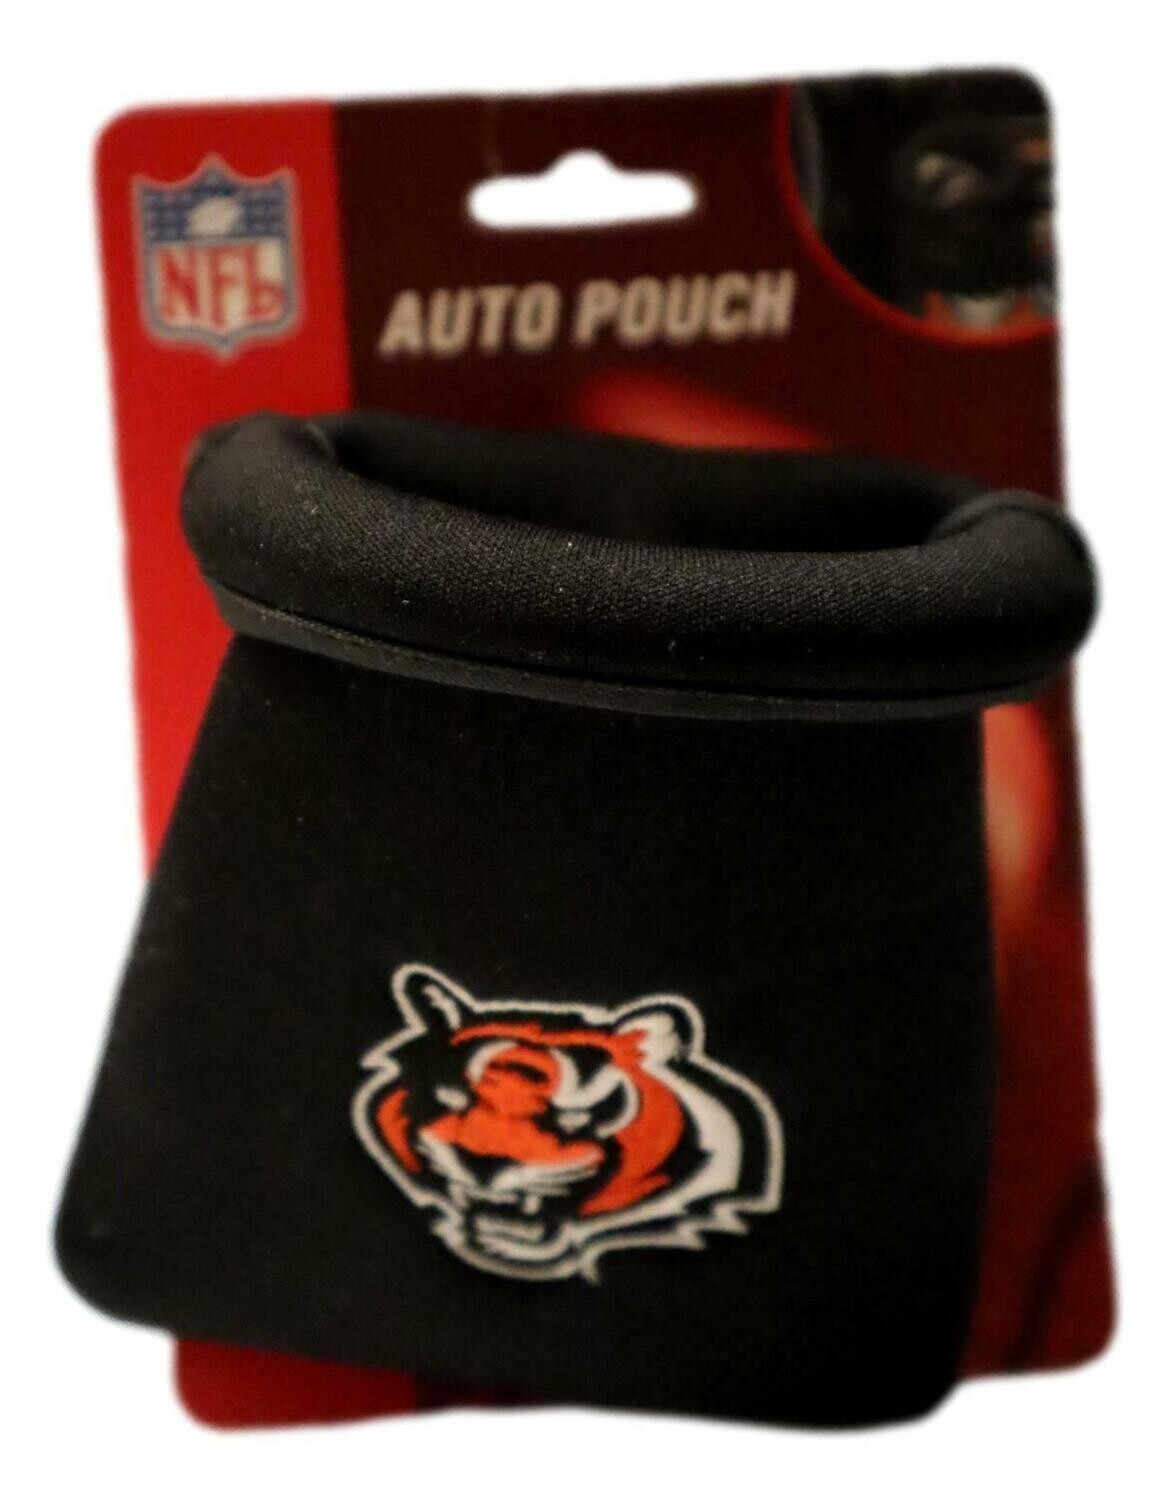 Car Caddy - NFL  Cincinnati Bengals Football